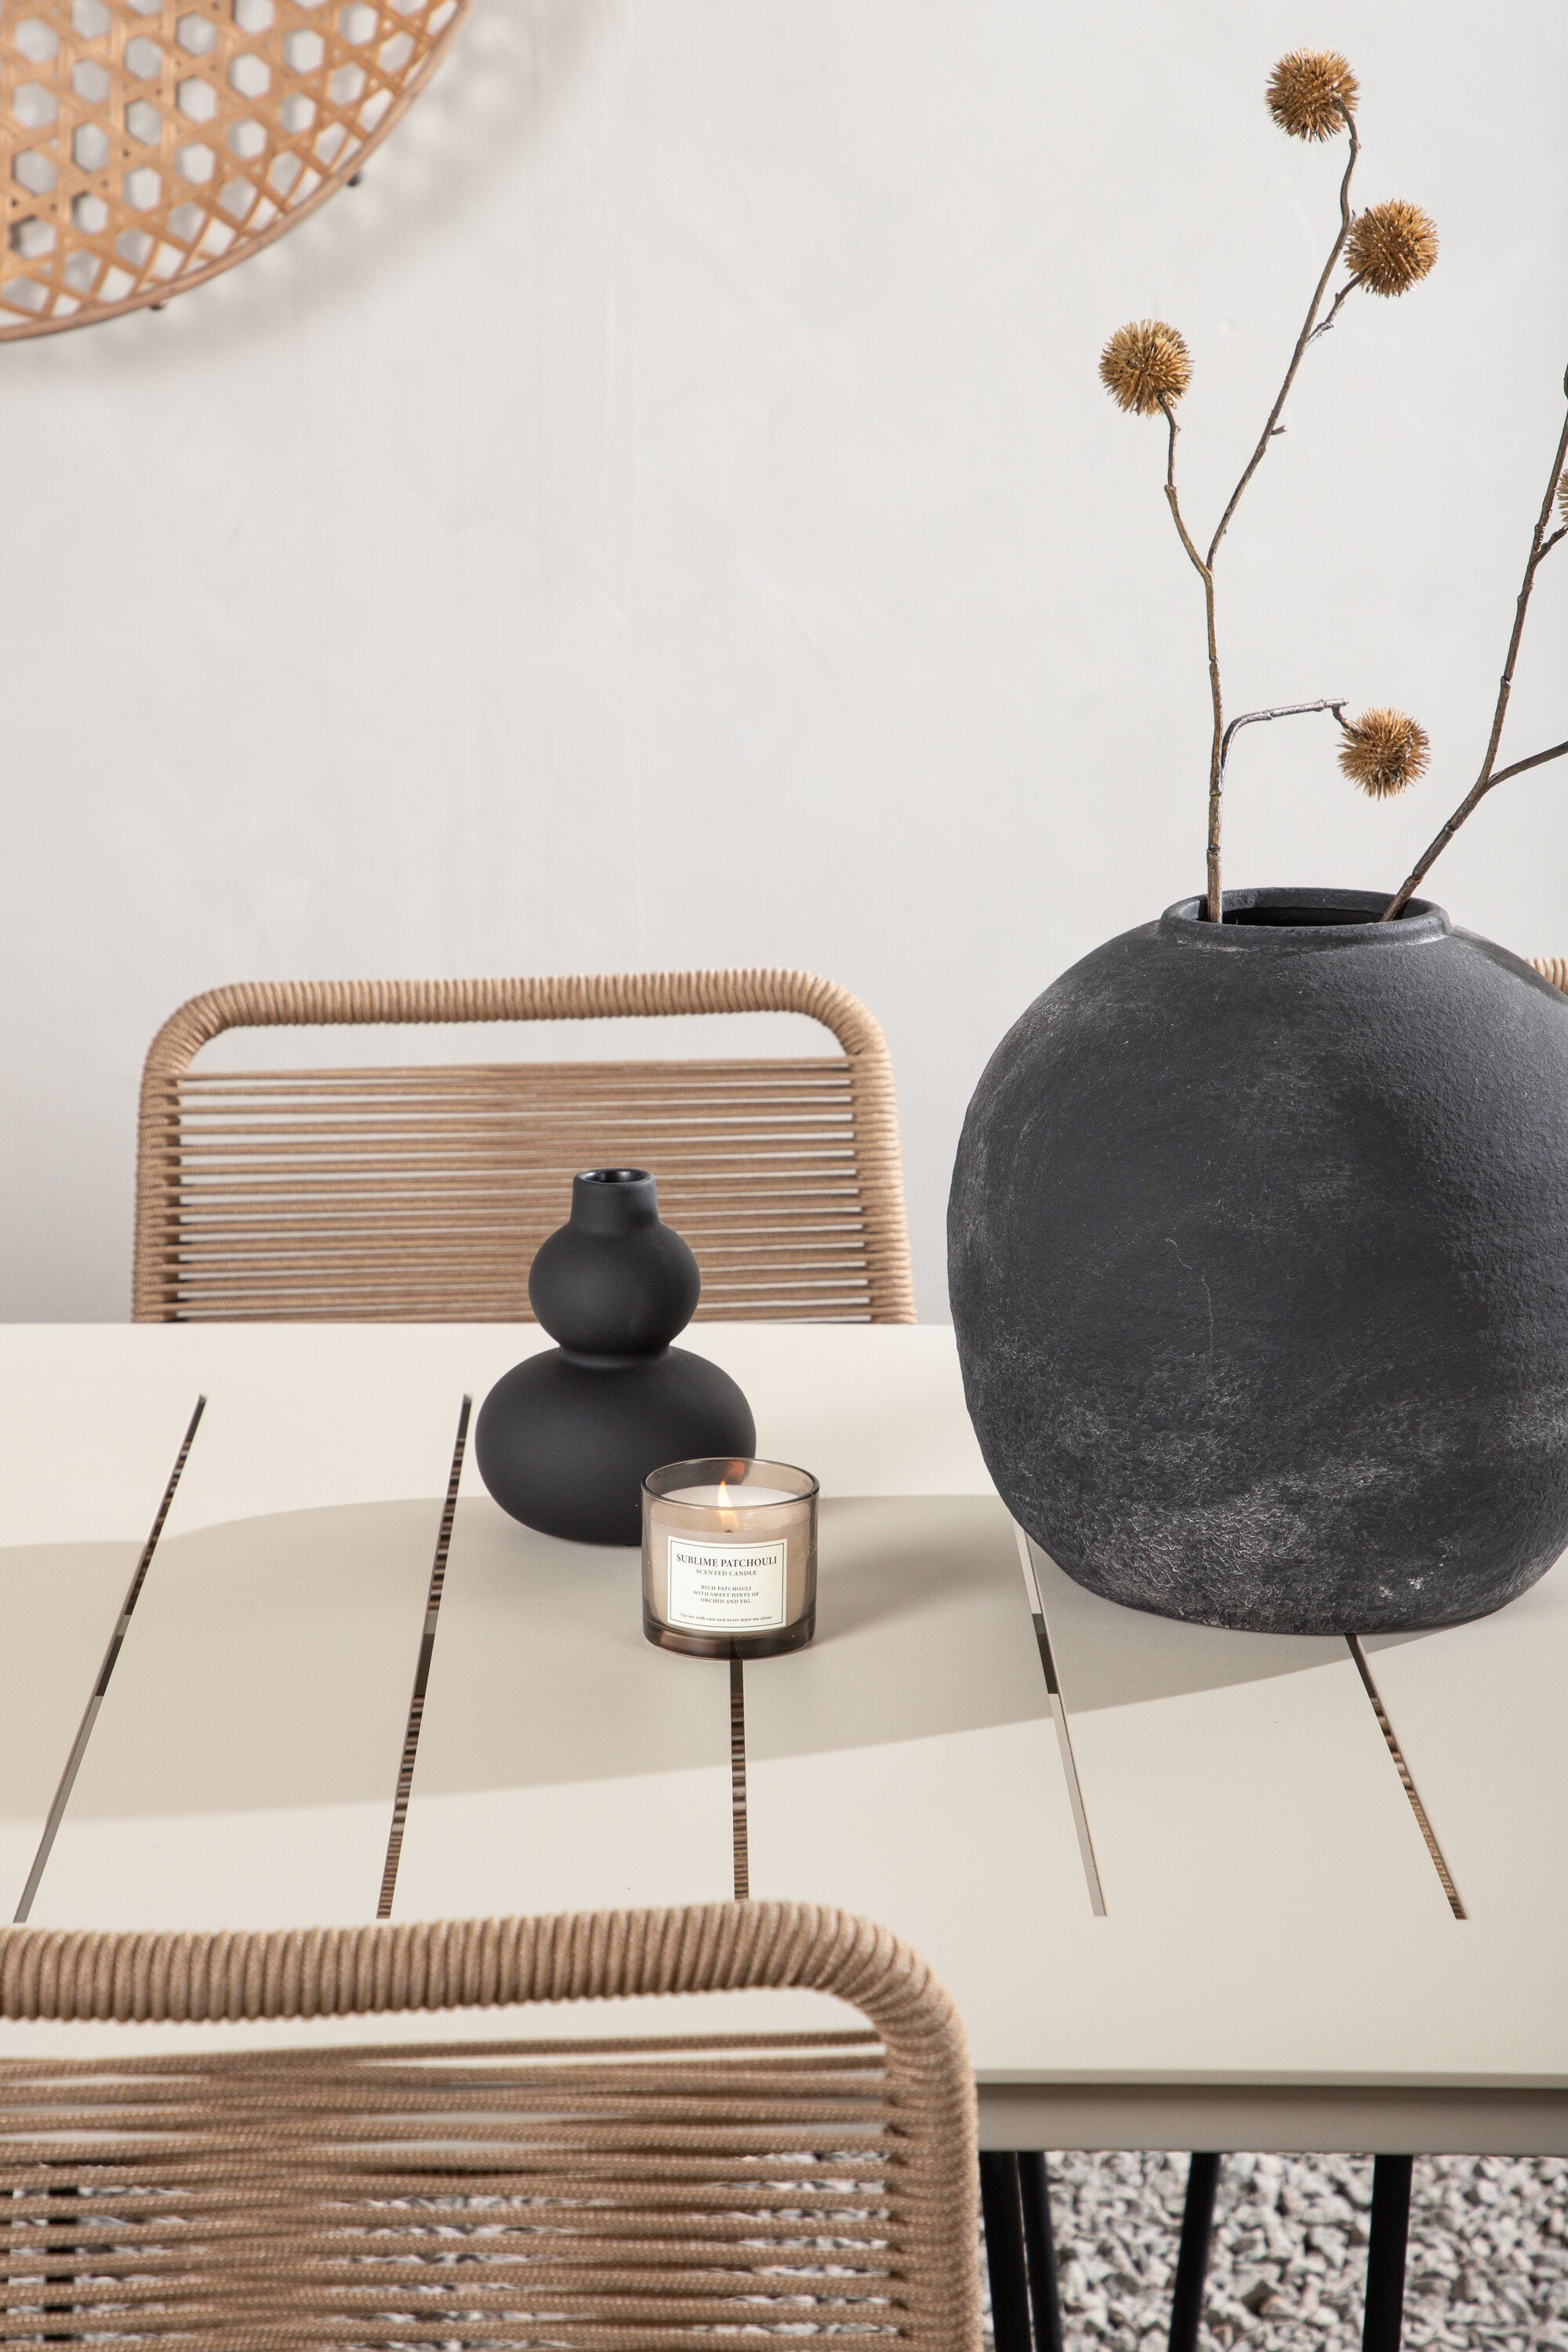 Lina Outdoor-Tischset + Lindos 200cm/6St. in Schwarz Braun präsentiert im Onlineshop von KAQTU Design AG. Gartentischset ist von Venture Home